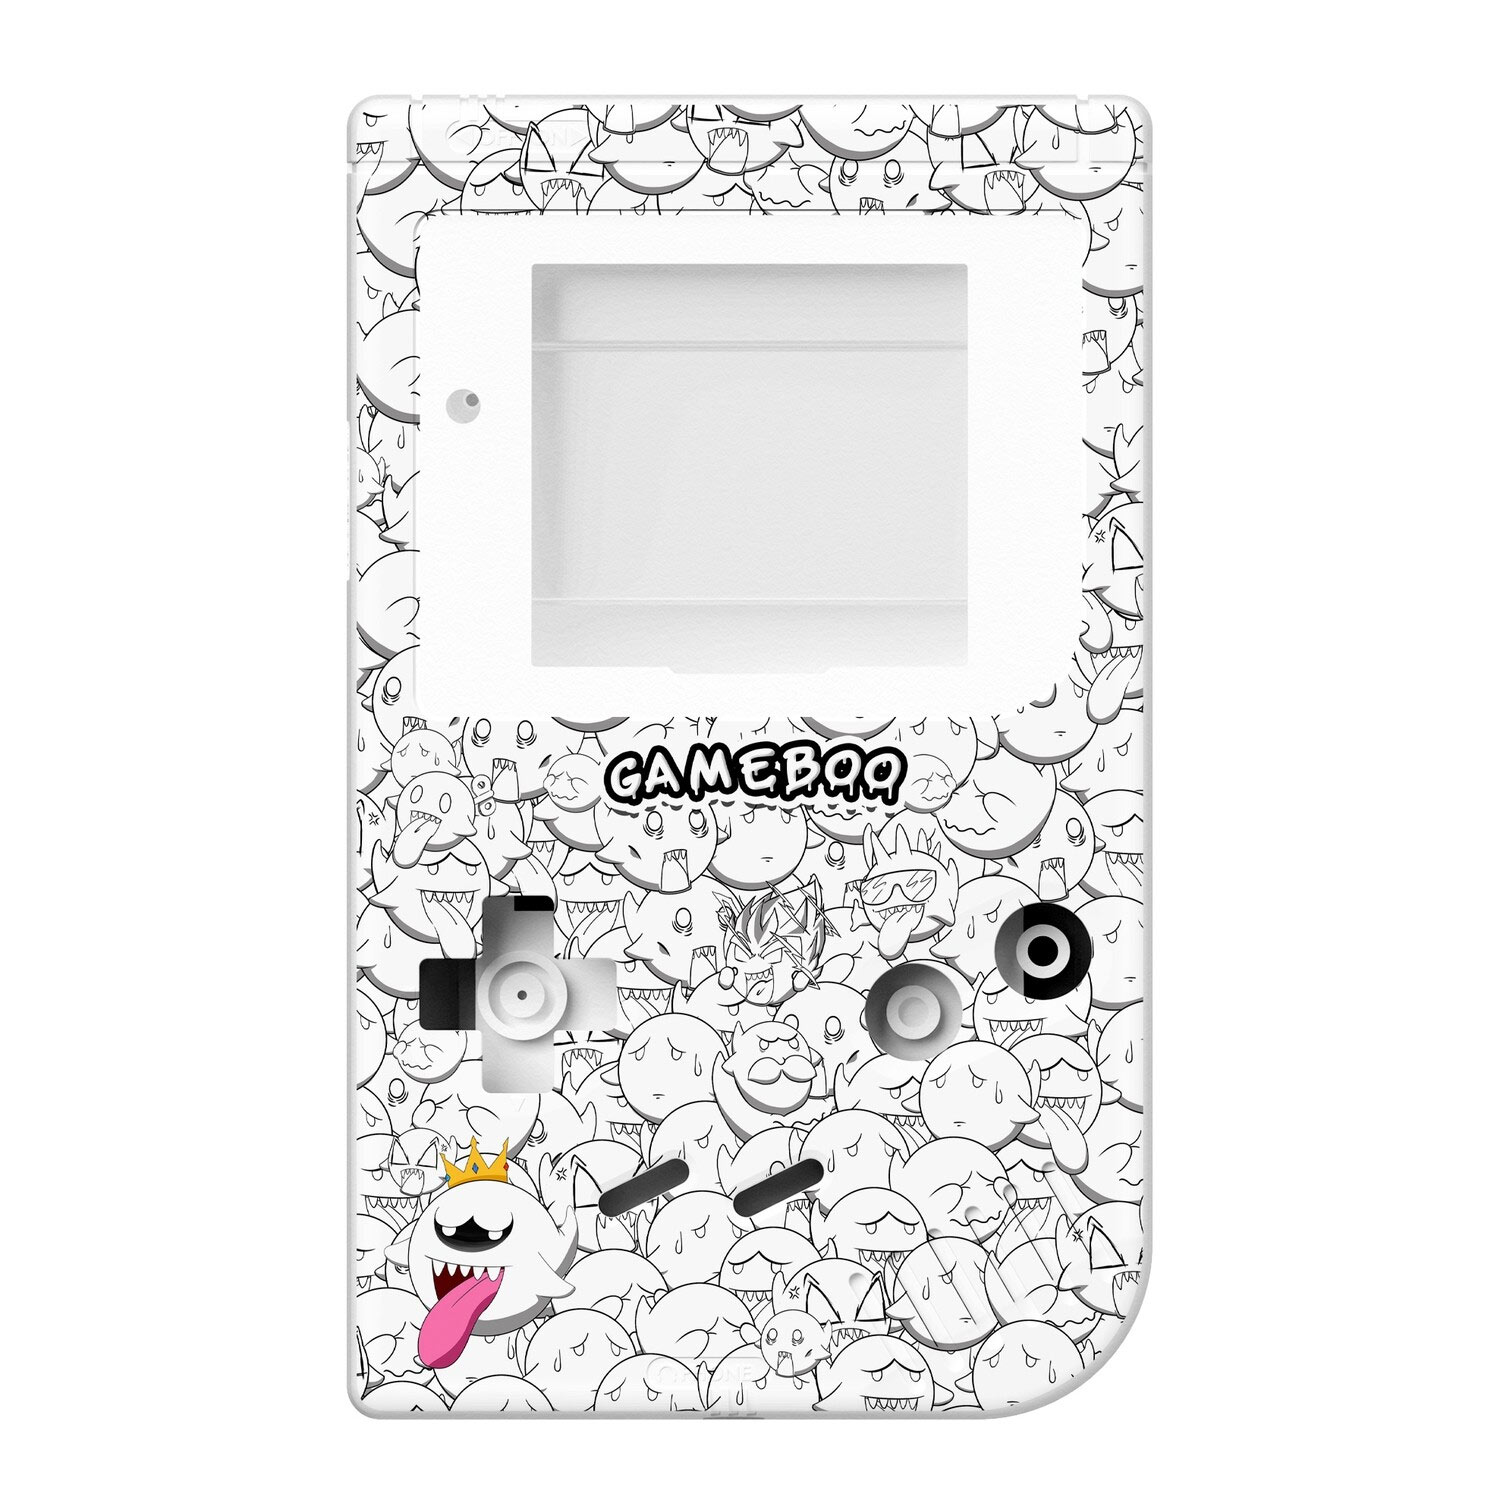 Gehäuse (GameBoo) für Game Boy Classic